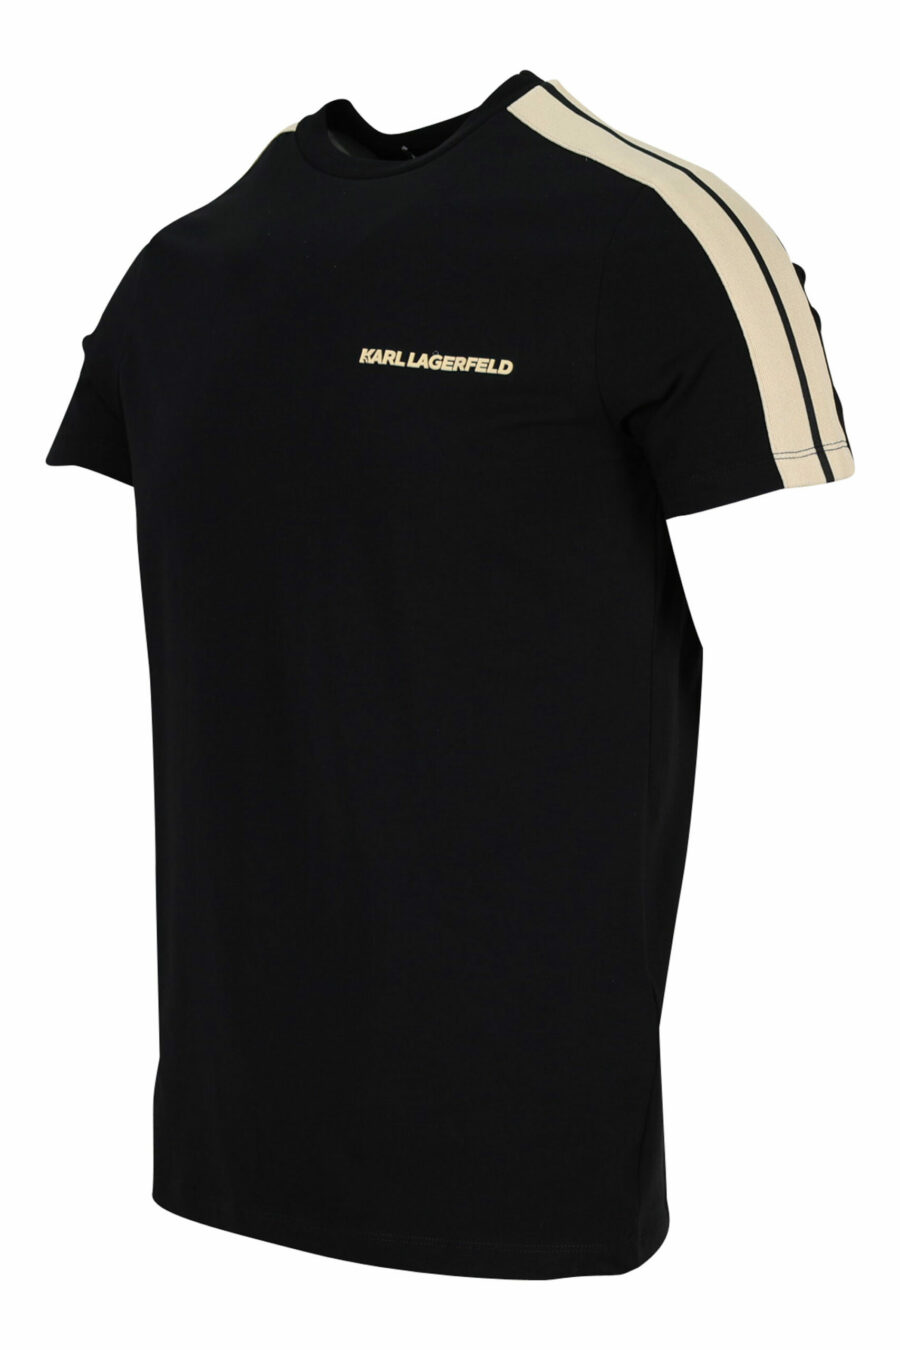 Schwarzes T-Shirt mit miniloguen und beigen Seitenstreifen - 4062226401746 1 skaliert